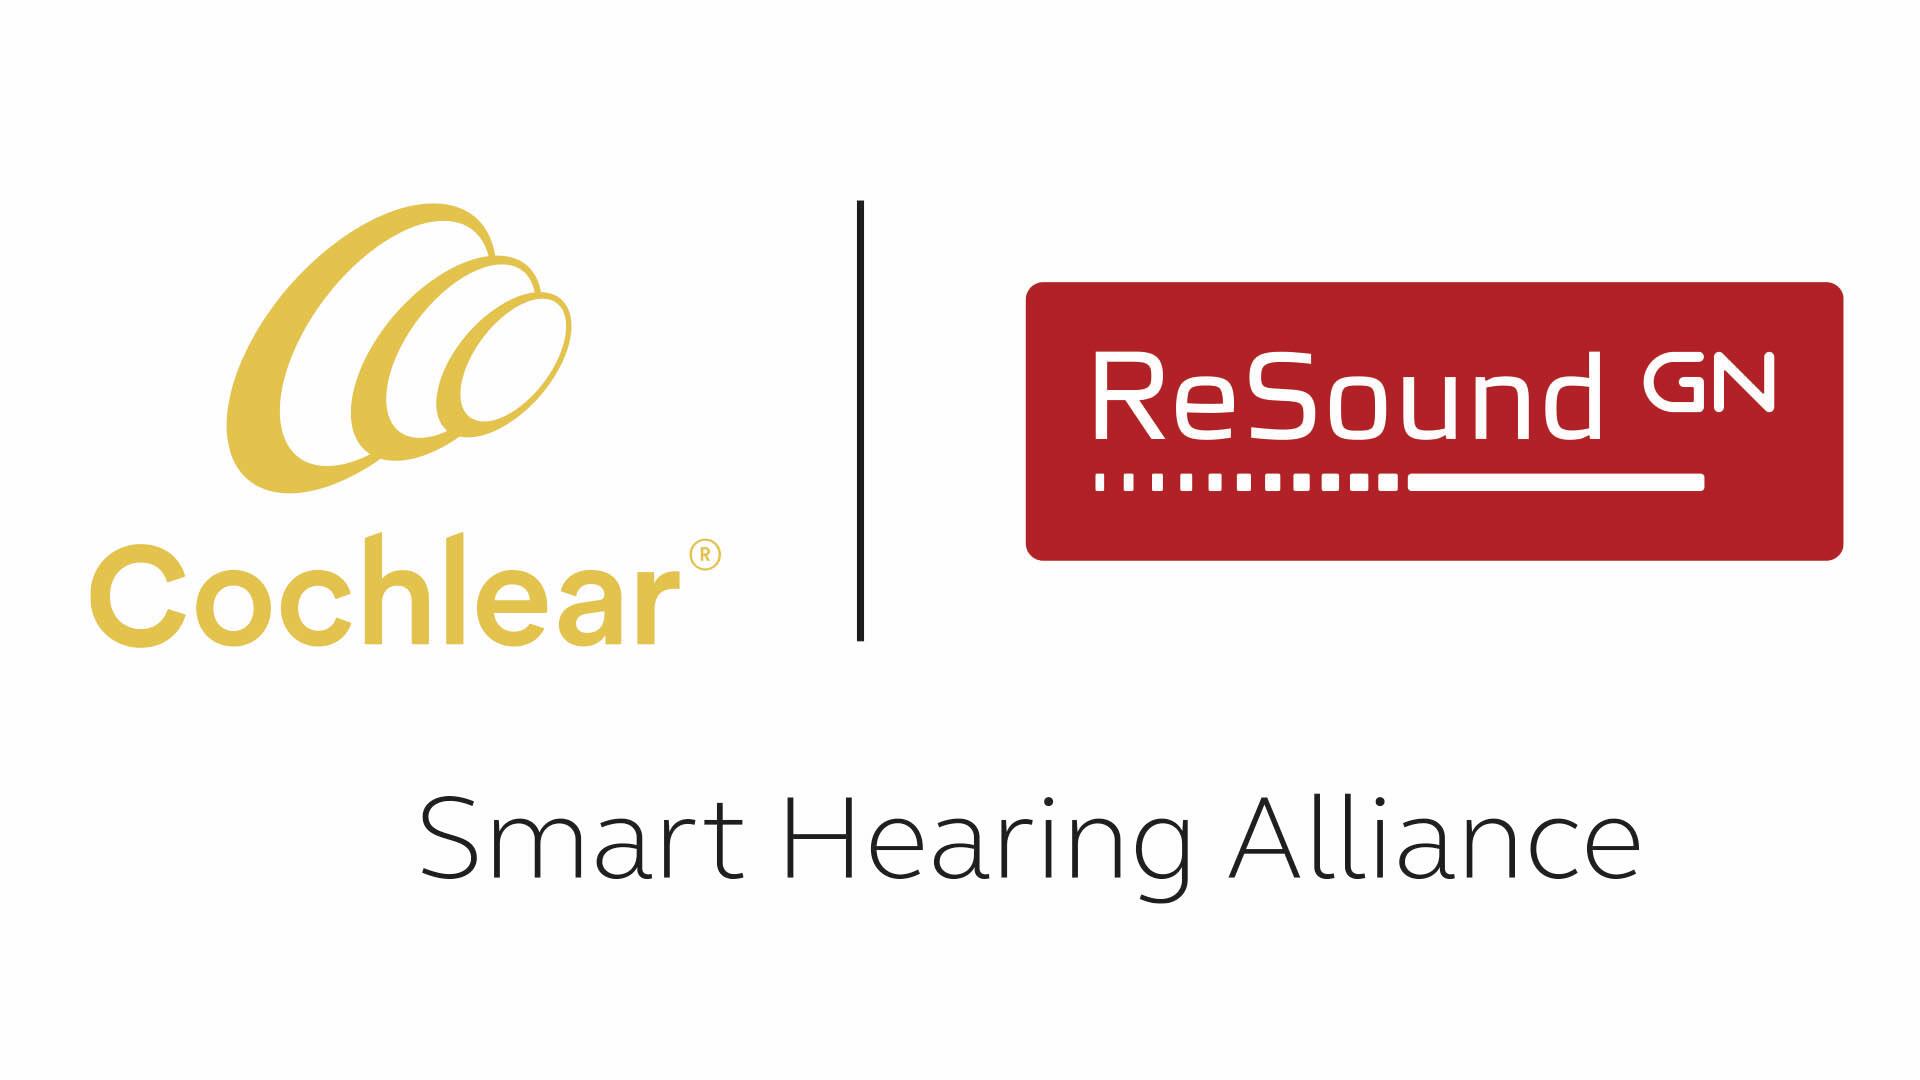 סמלי לוגו של Cochlear ו-ReSound